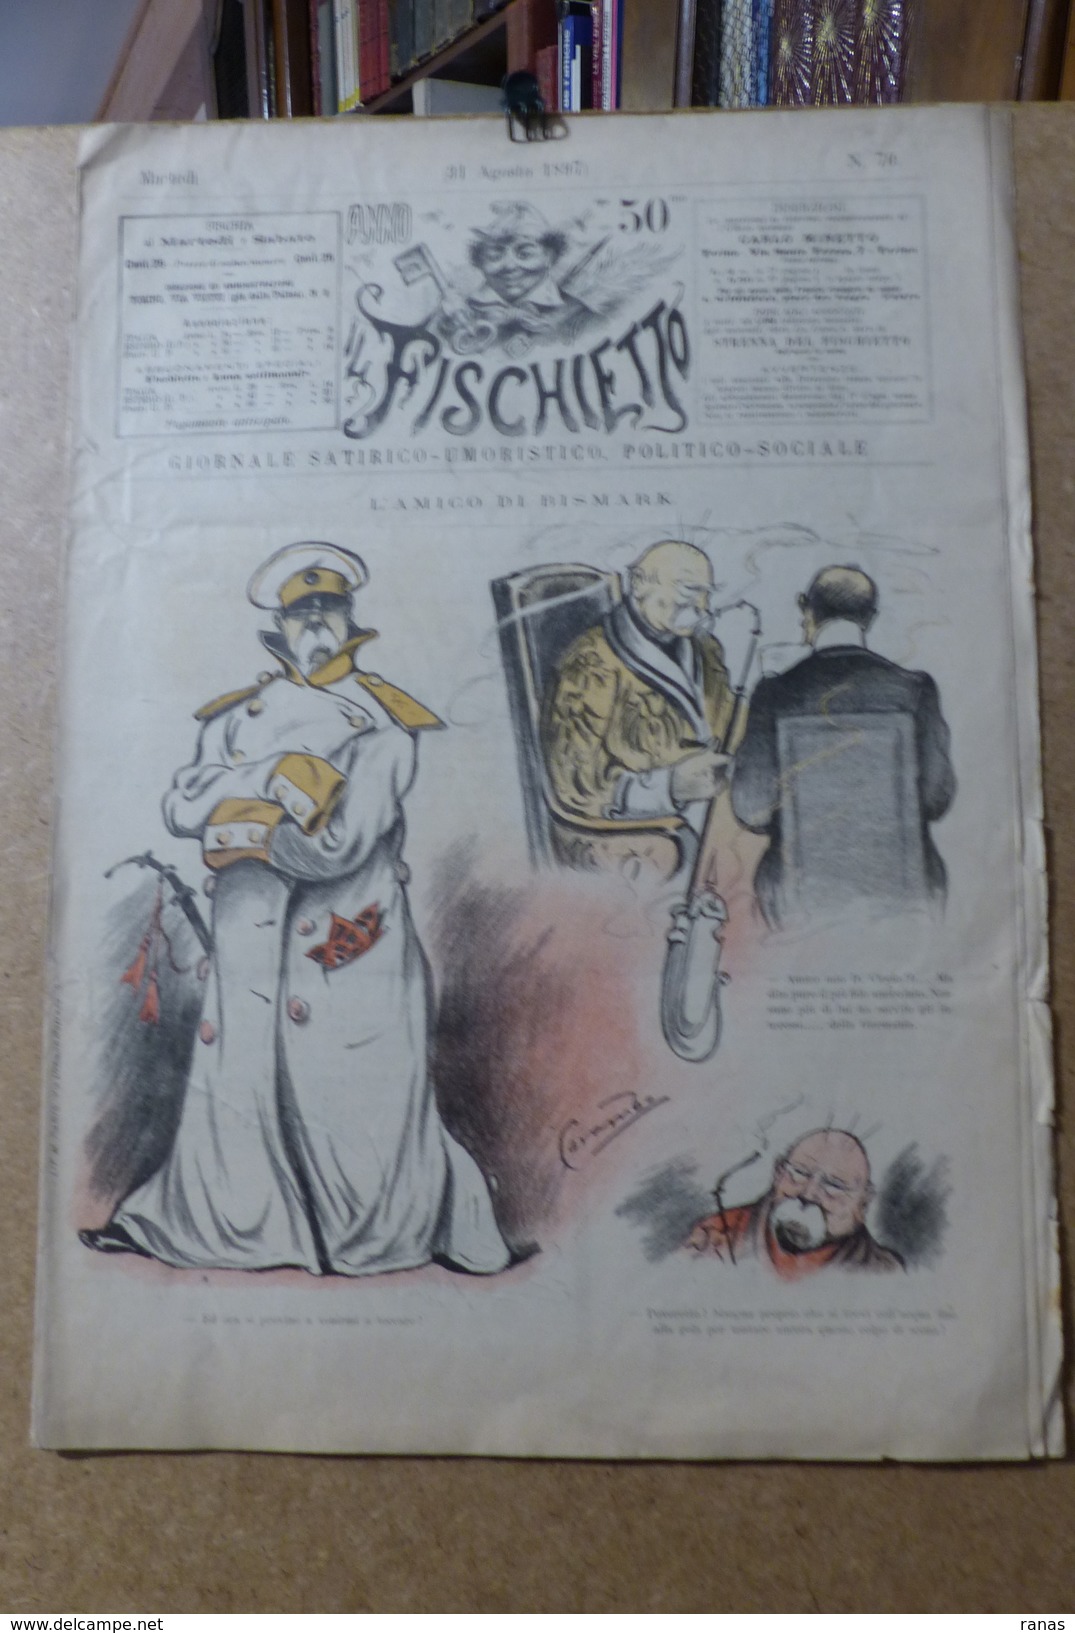 Revue Journal FISCHIETTO Satirique Caricature 38 X 27 Germany Allemagne Bismarck N° 70 De 1897 Pipe - 1850 - 1899